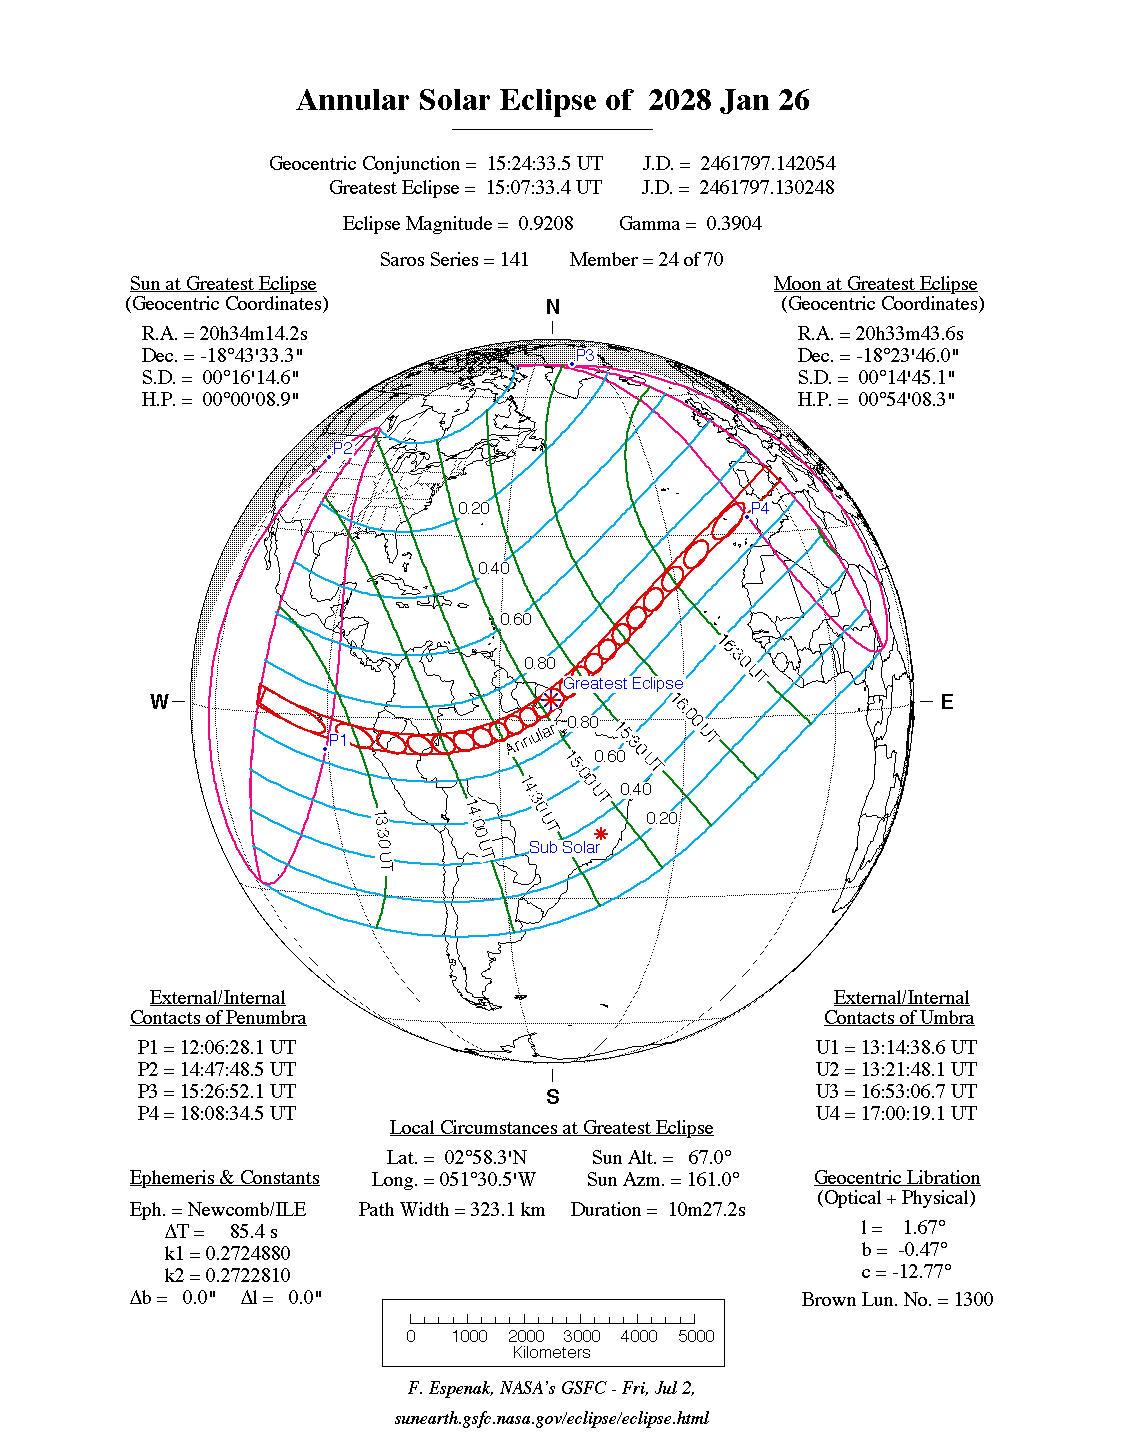 Verlauf der Ringförmigen Sonnenfinsternis am 26.01.2028